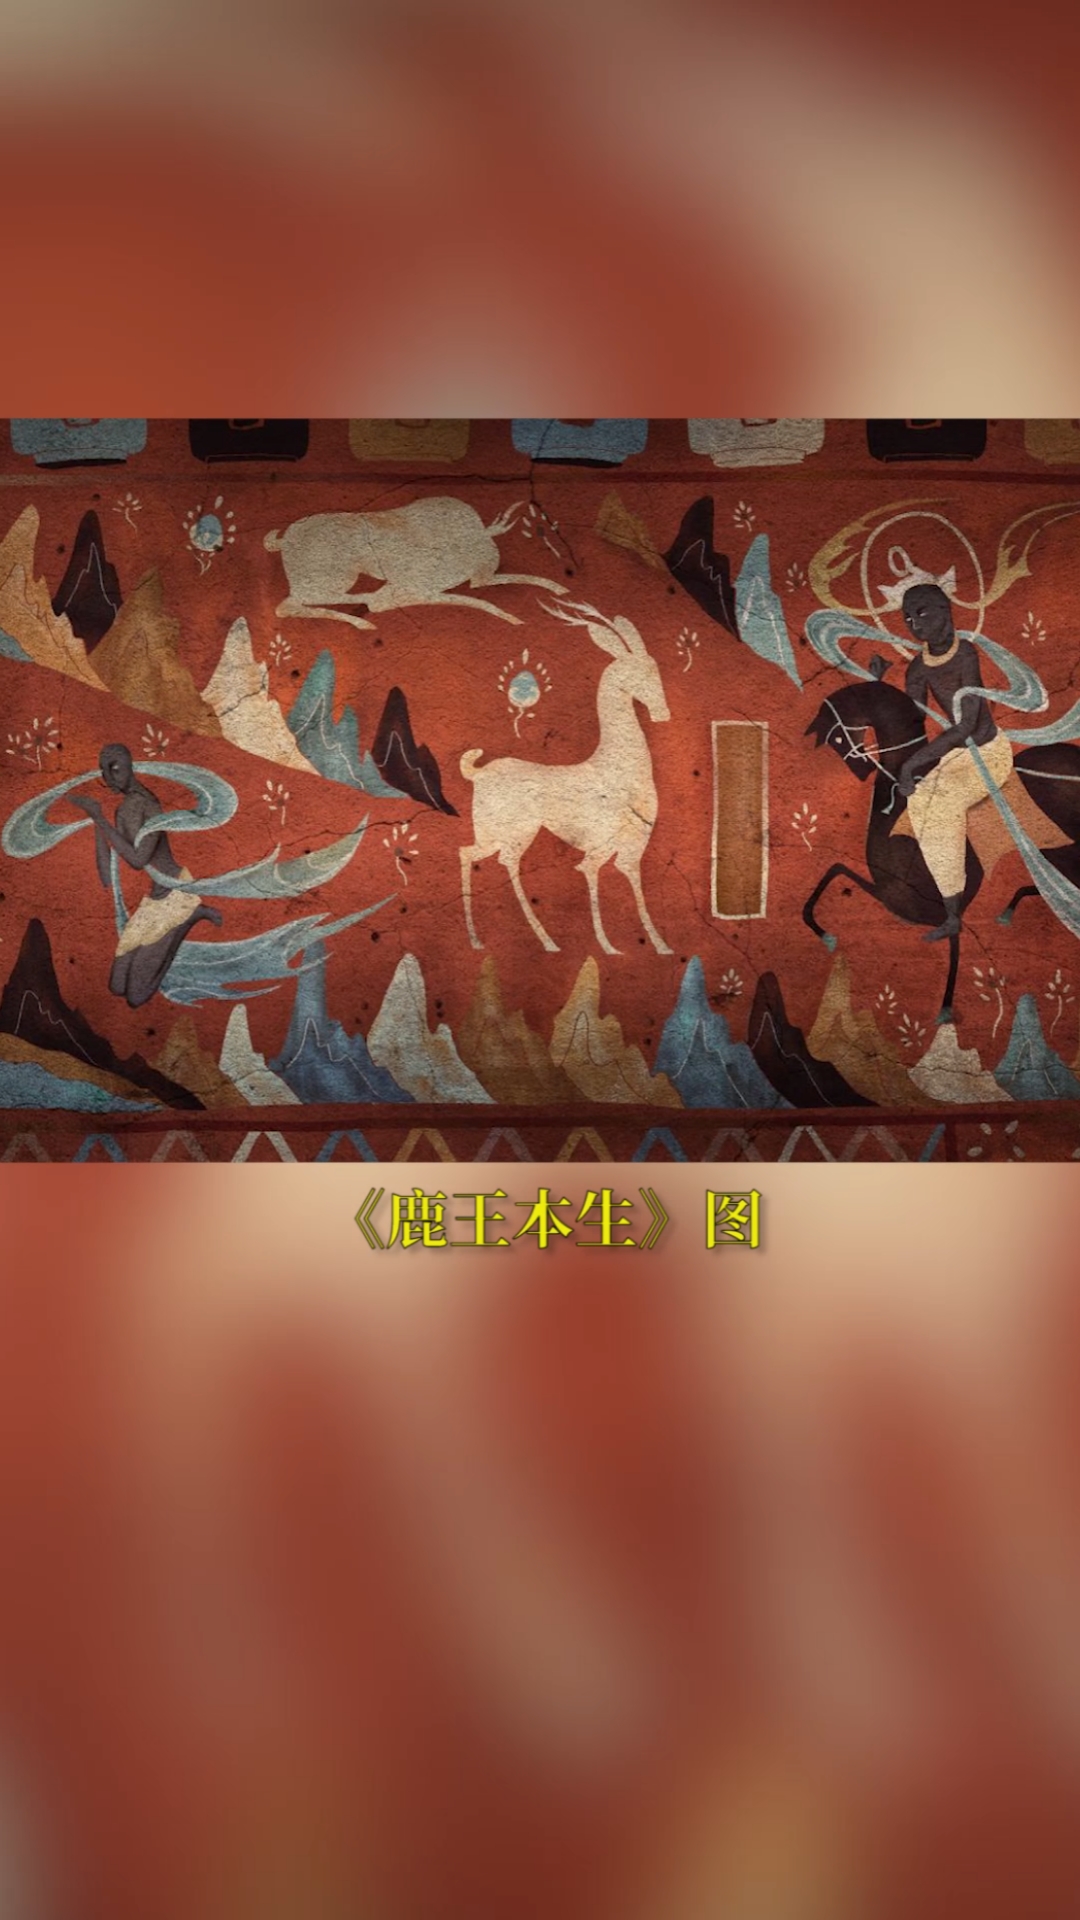 手工制作万物有灵生生不息敦煌壁画中的九色鹿从不只是神话